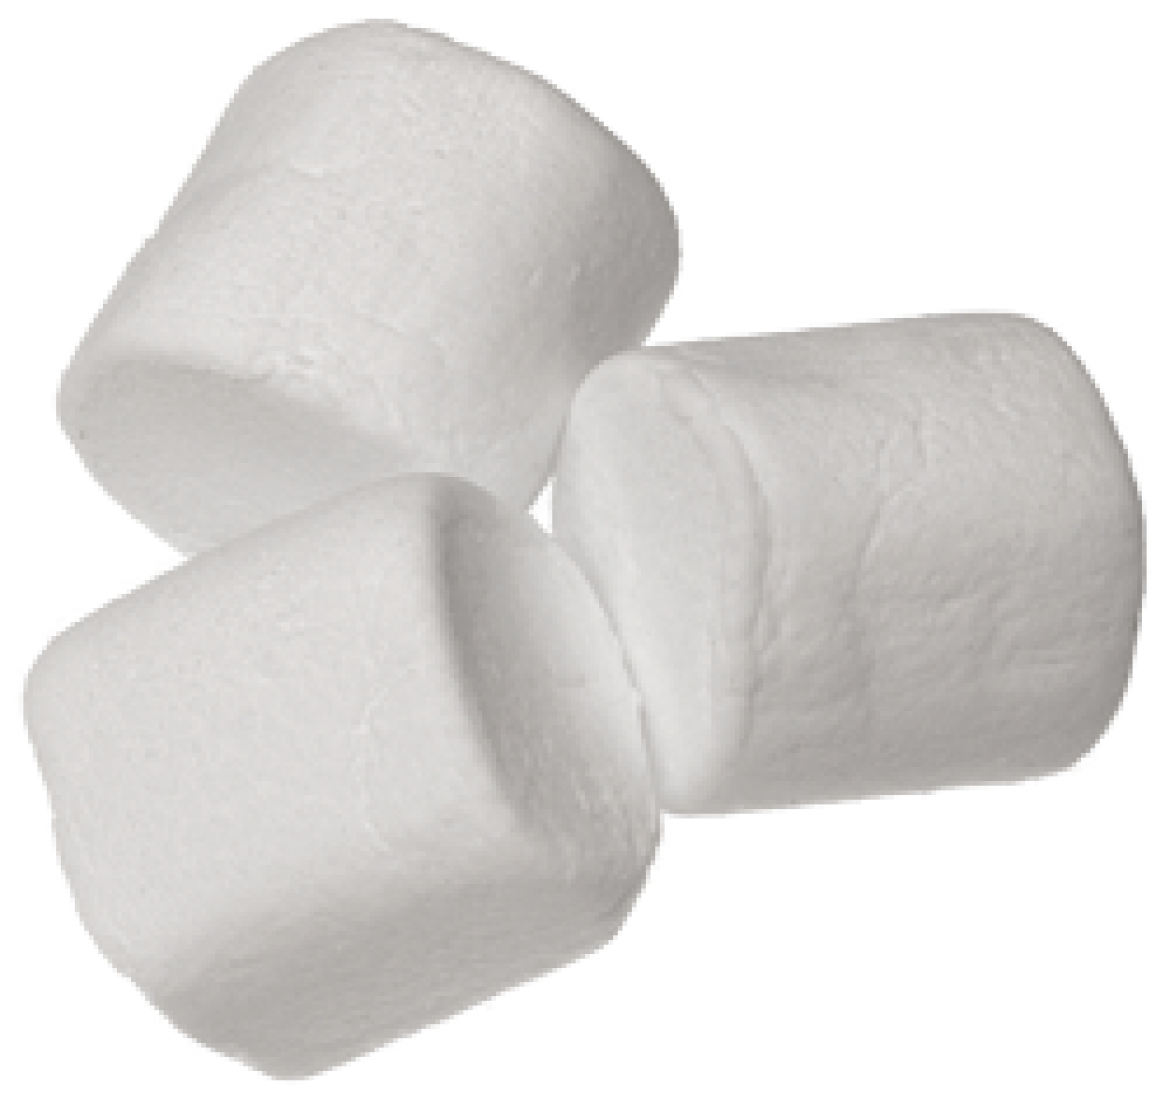 White Mini Marshmallows 1kg